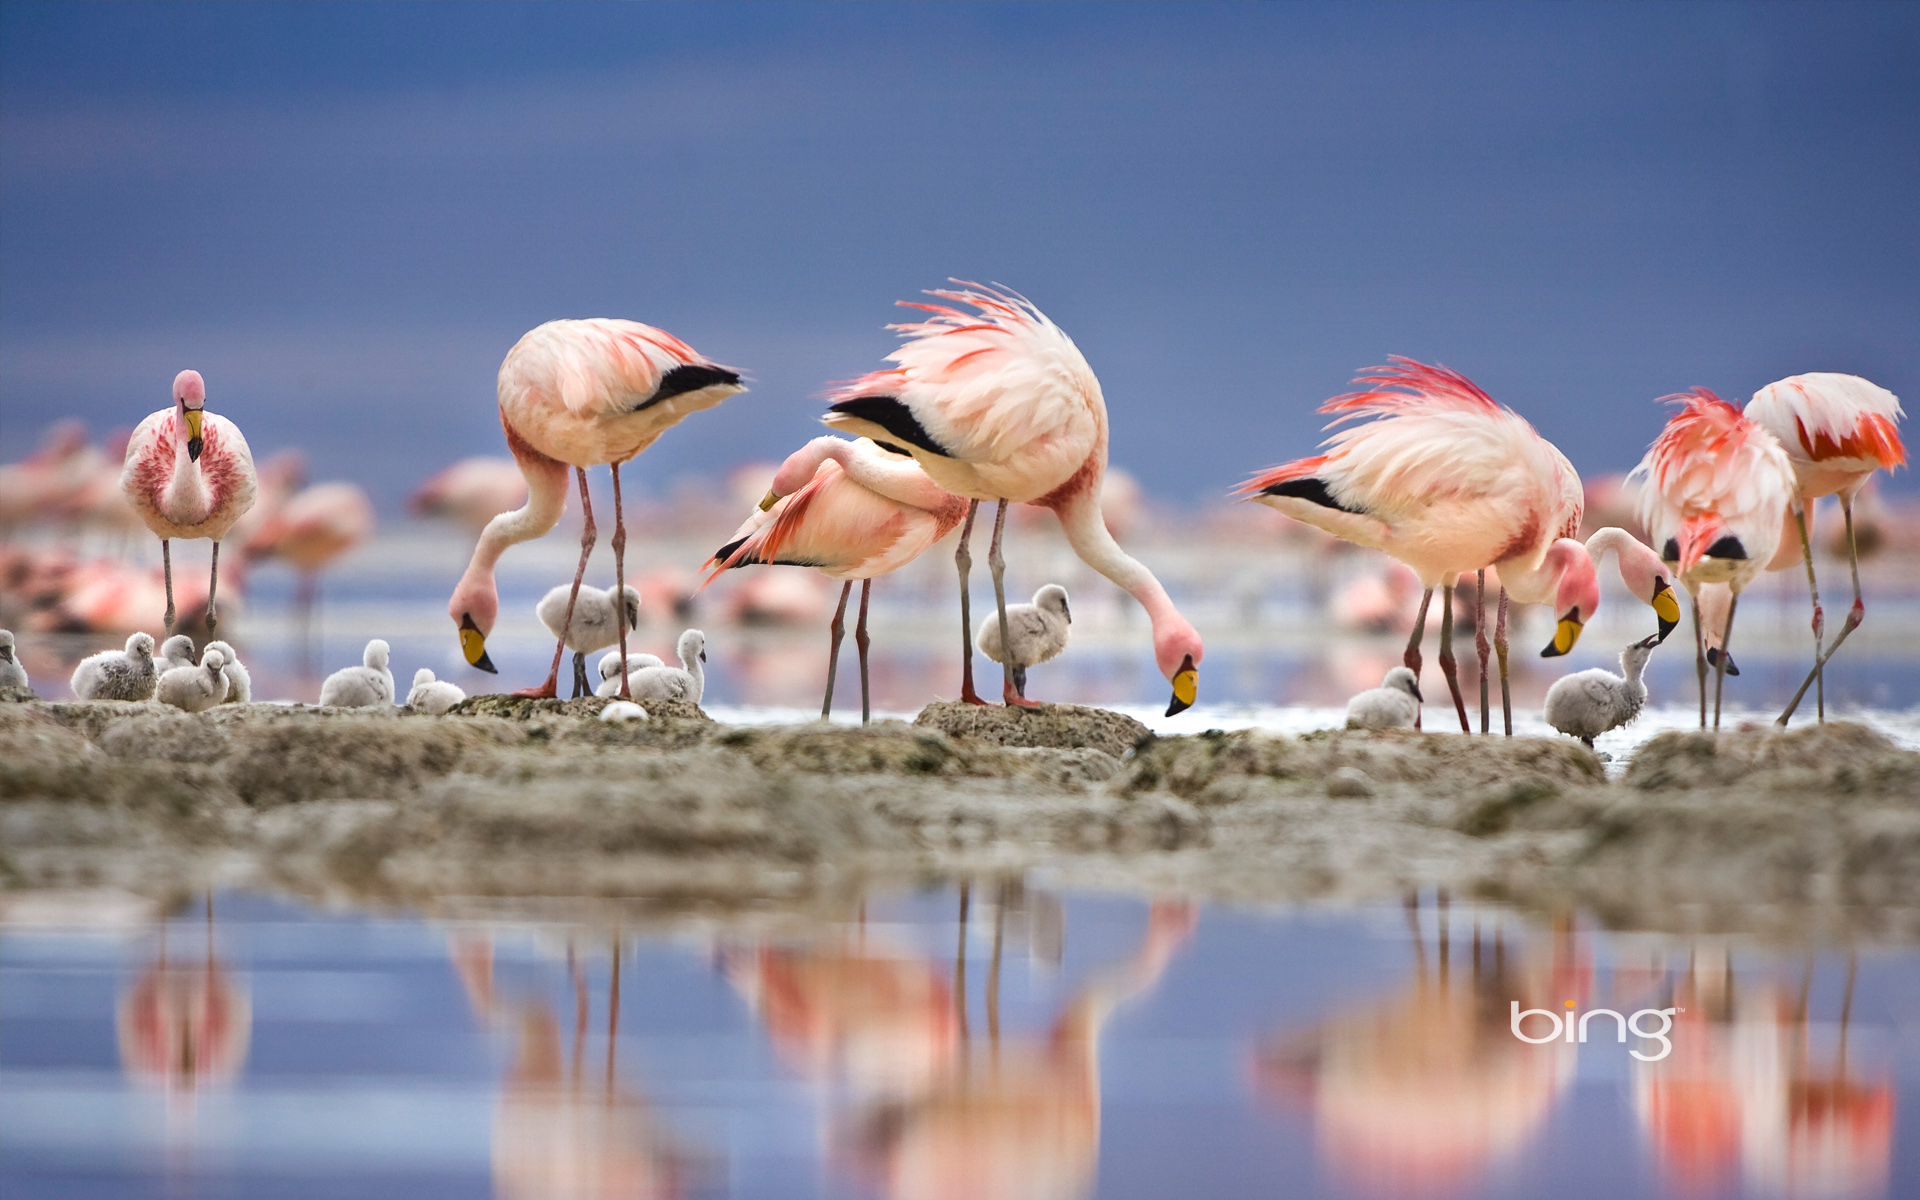 flamingo Wallpaper